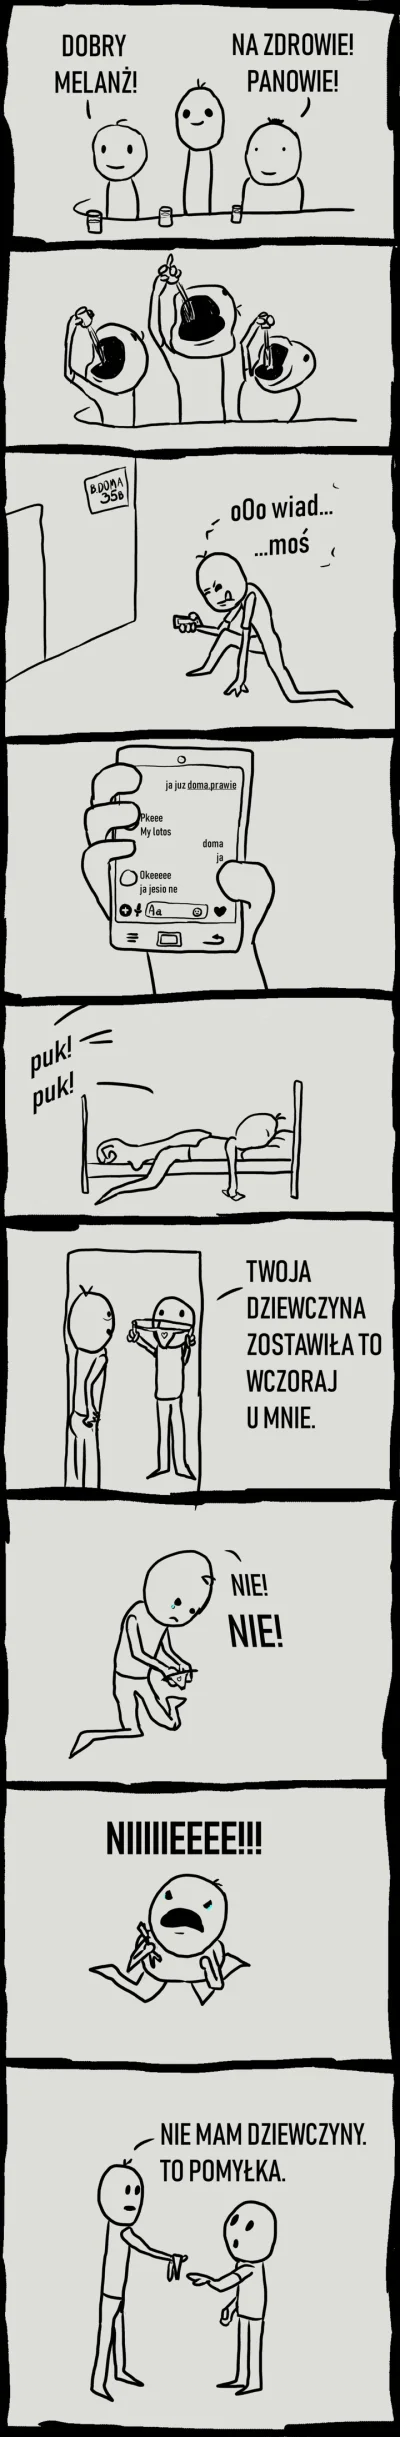 dziekuje - #heheszki #komiks #byloaledobre #humorobrazkowy #pkeeee #logikarozowychpas...